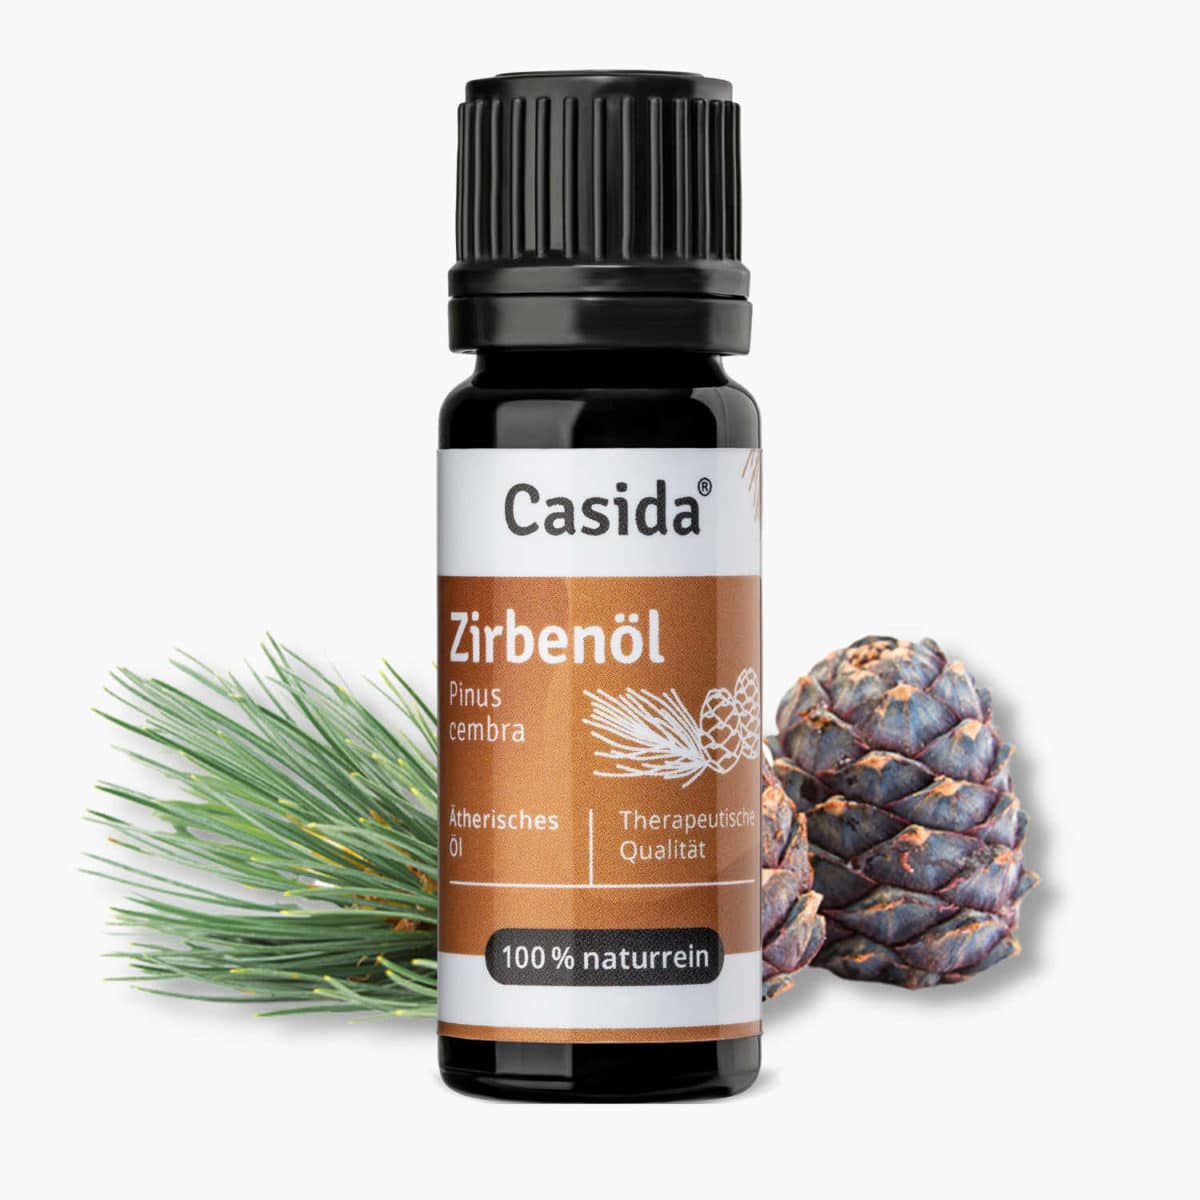 Casida Stone Pine Oil Pinus cembra naturrein – 10 ml 16486743 PZN Apotheke Zirbelkiefernöl ätherische Öle Diffuser